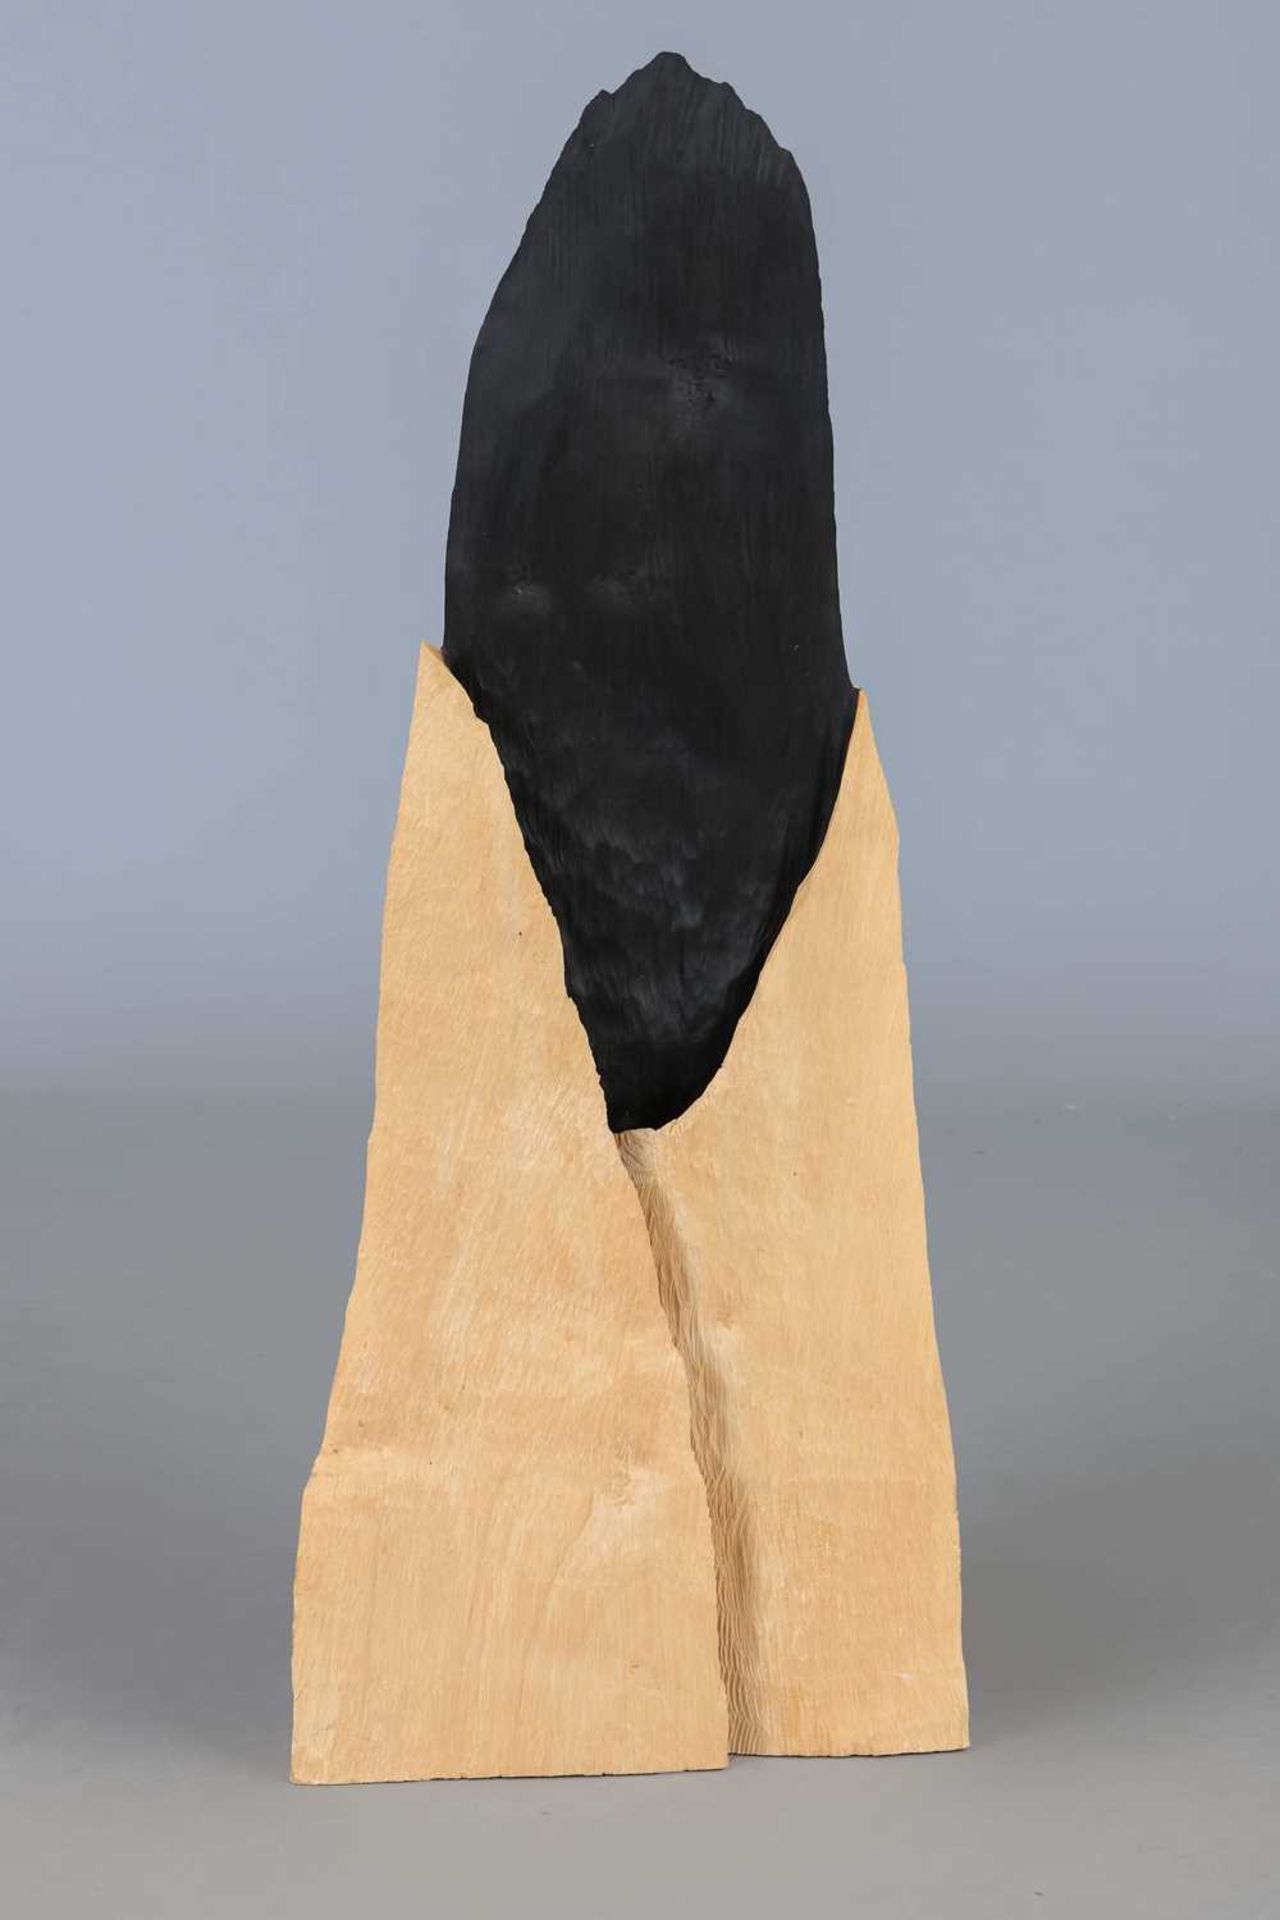 DAVID NASH (1945 Esher/UK) Holz-Skulptur